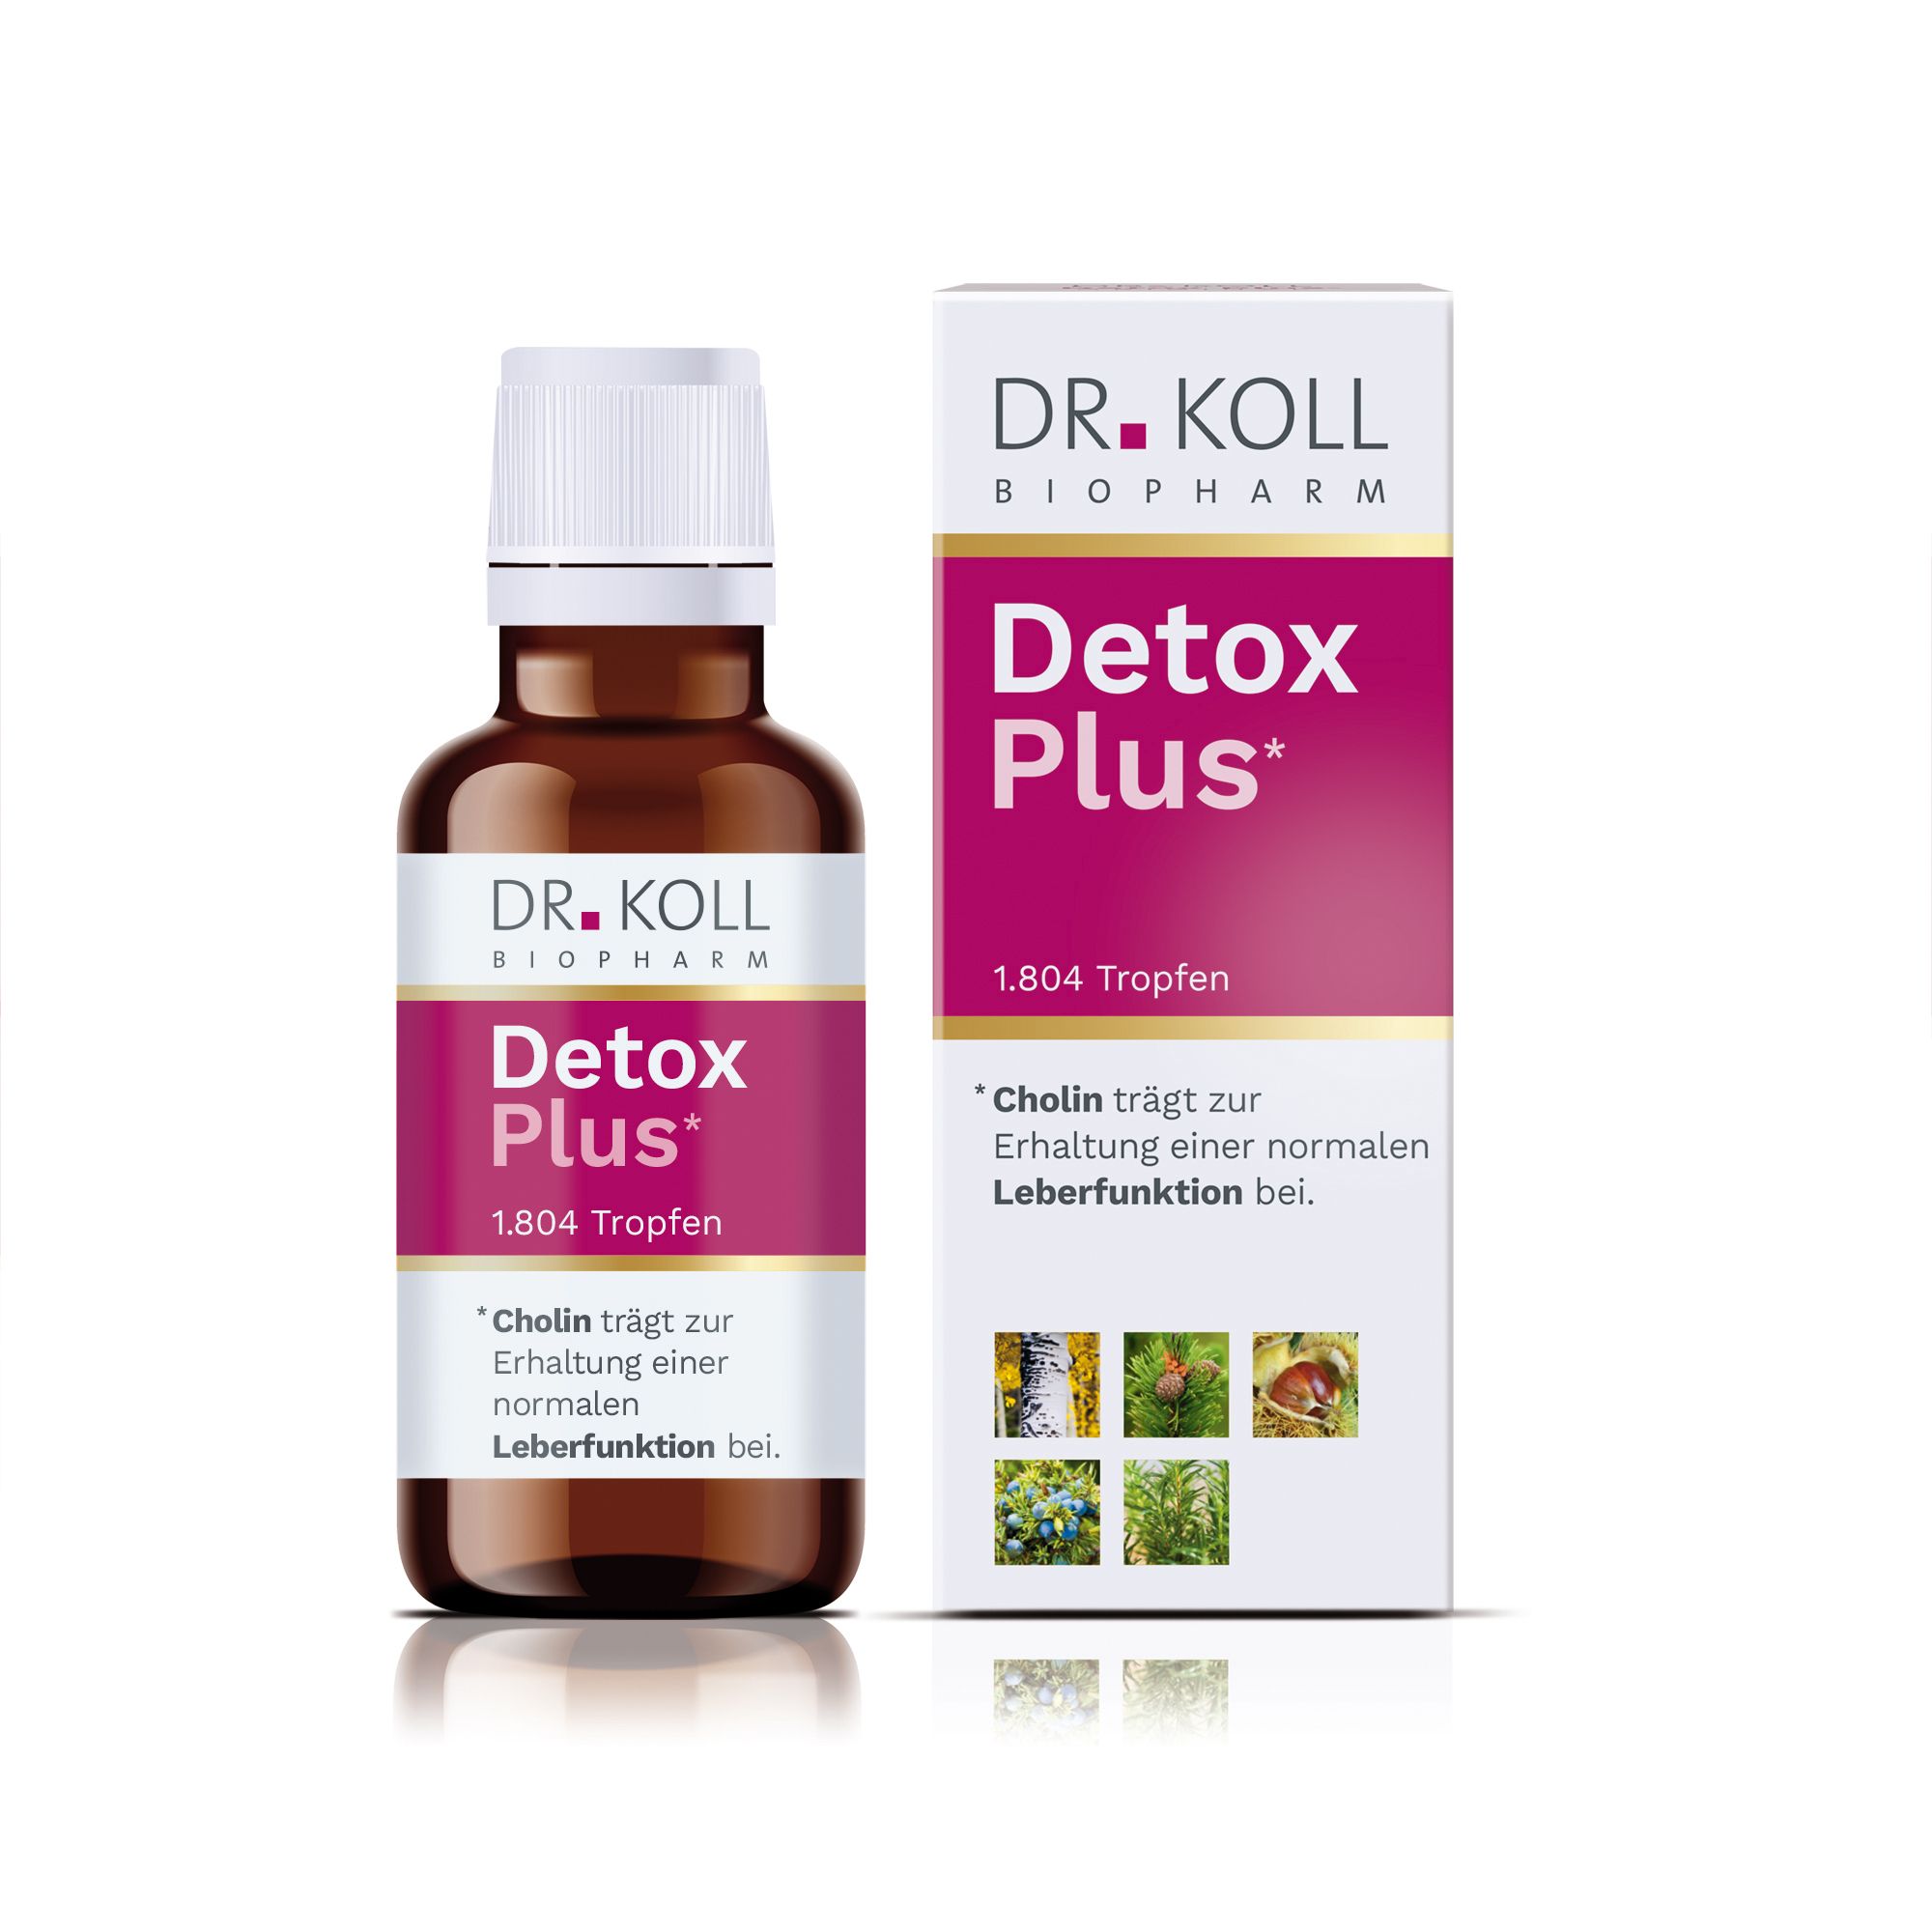 DR. Koll Detox Plus*